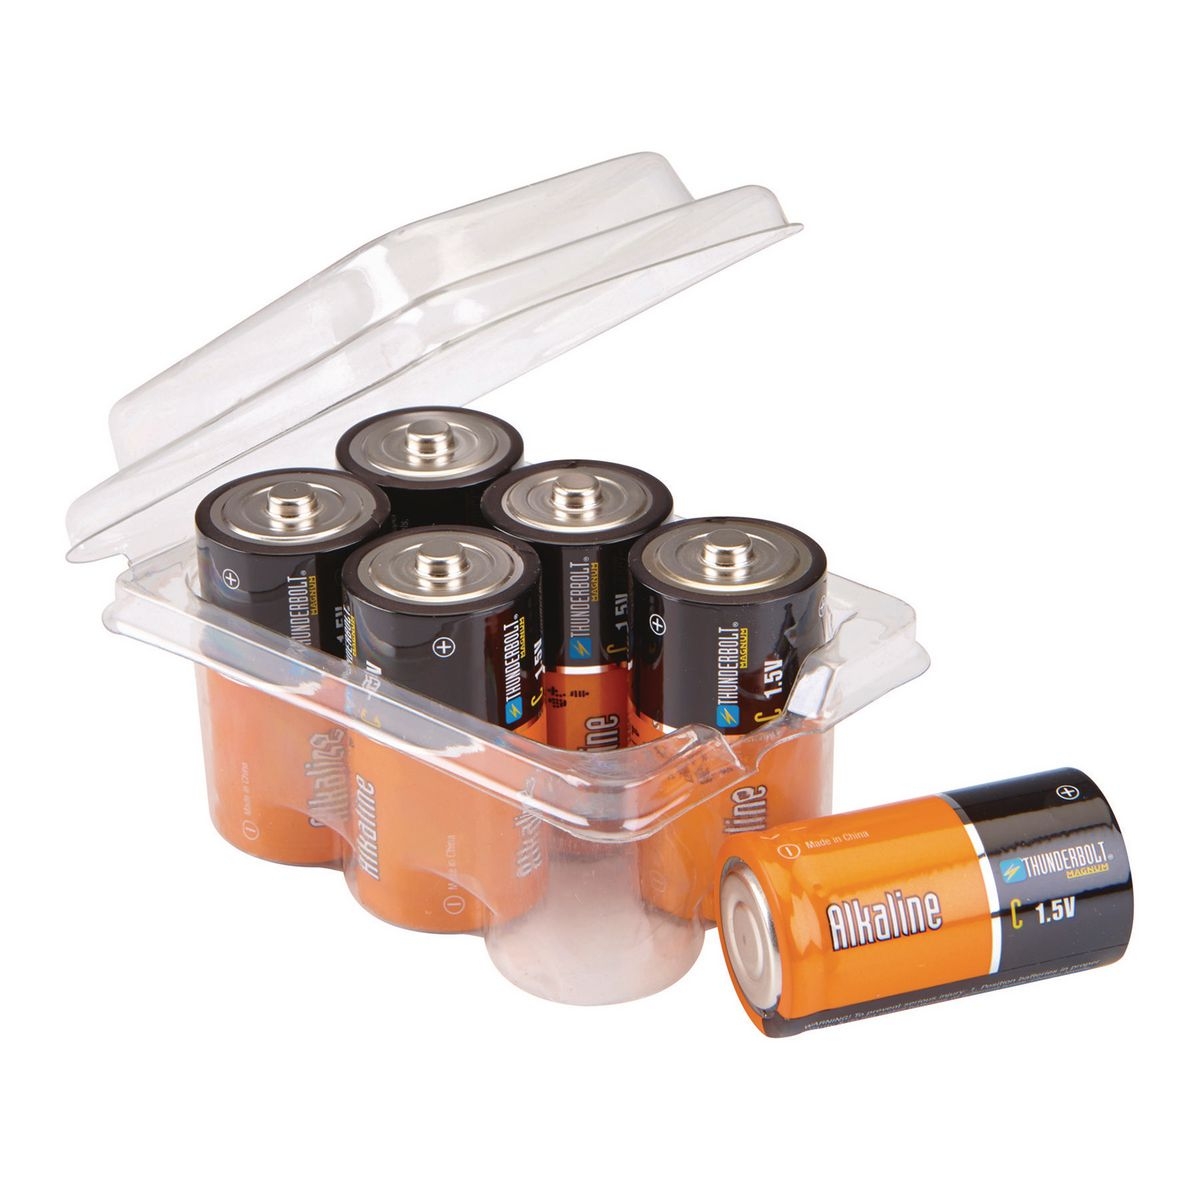 THUNDERBOLT C Alkaline Batteries - 6 Pk. – Item 61272 / 92406